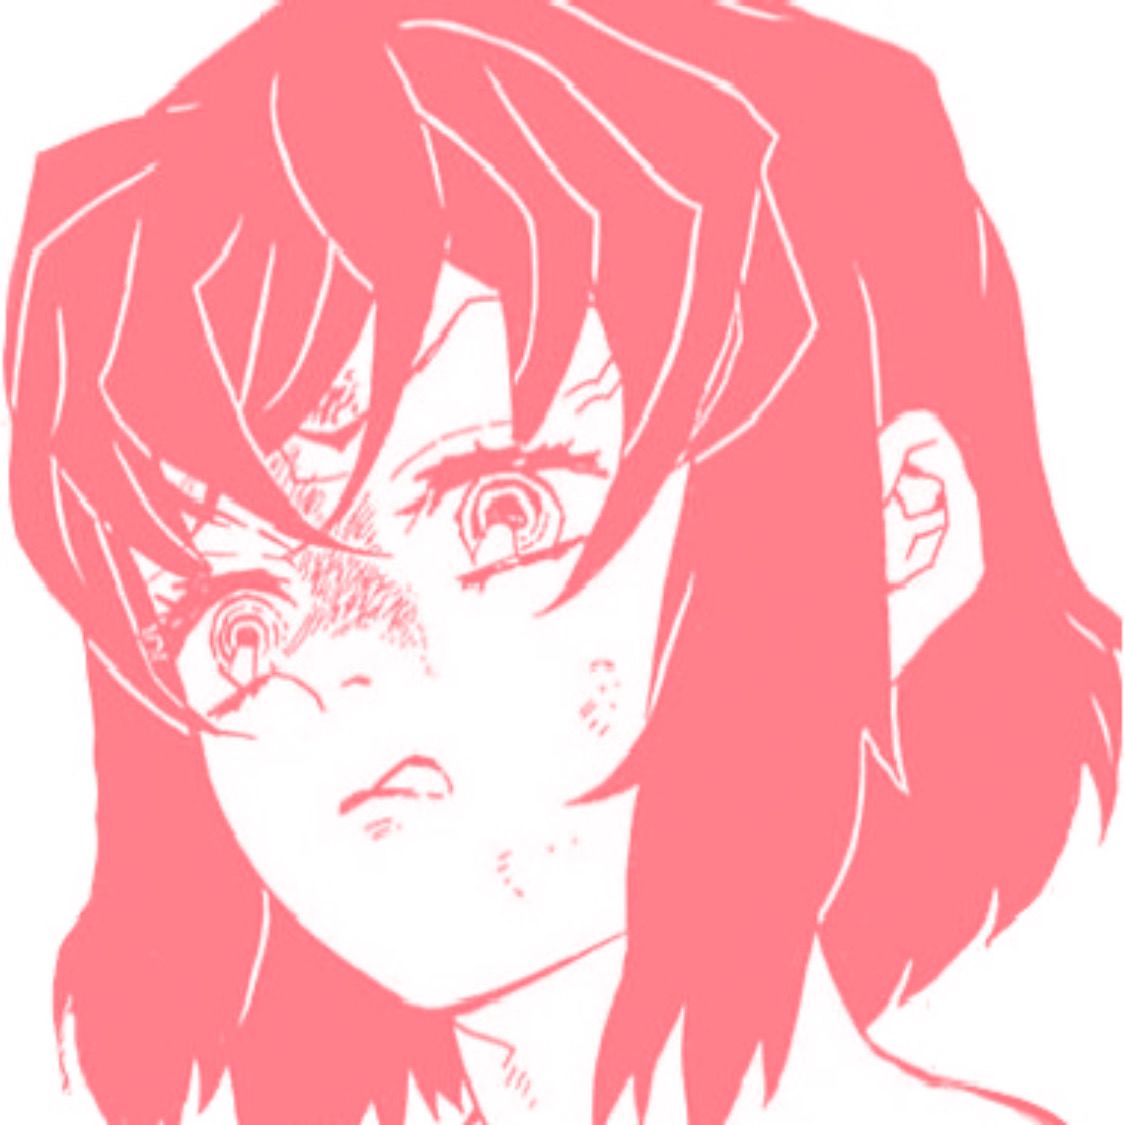 inosuke demon slayer pink manga icon. Mangá icons, Anime demon, Anime